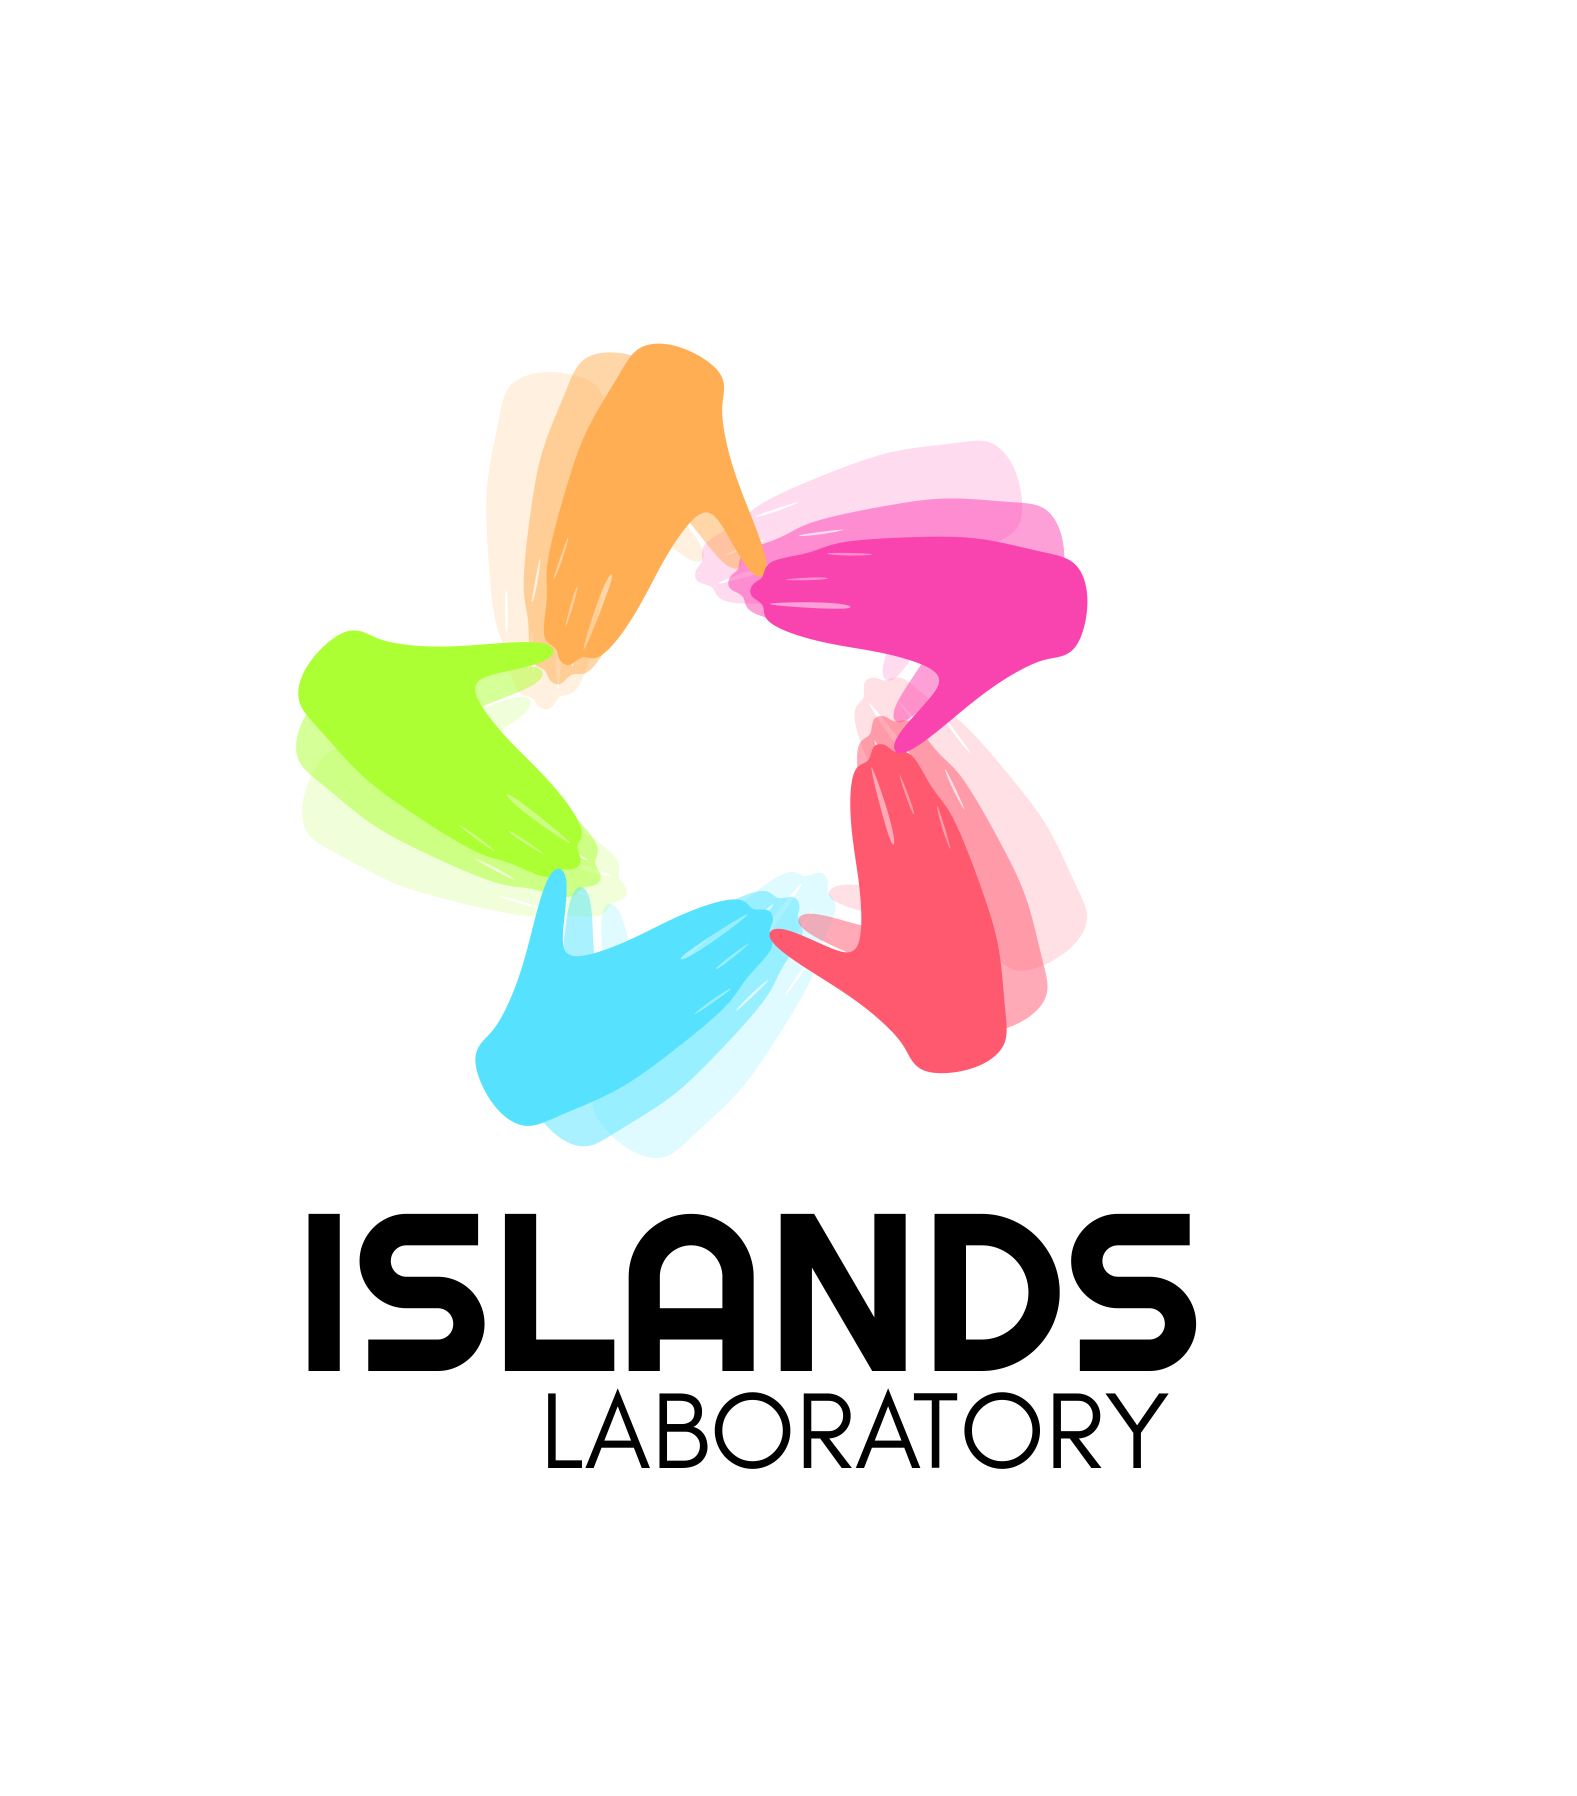 Islands Laboratory